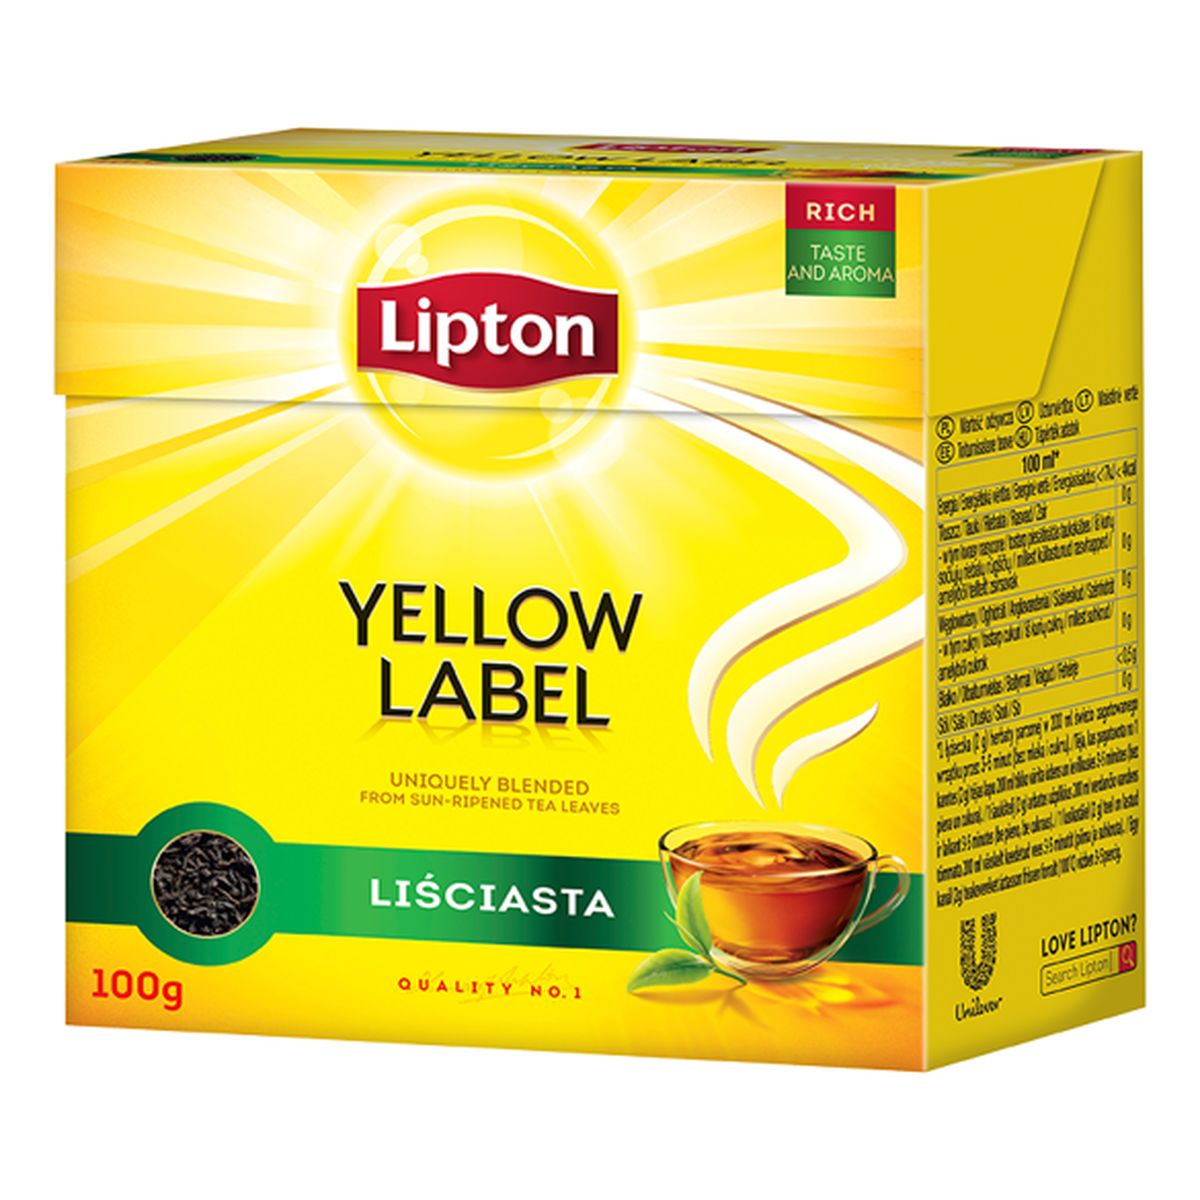 Lipton Yellow Label Herbata czarna liściasta 100g